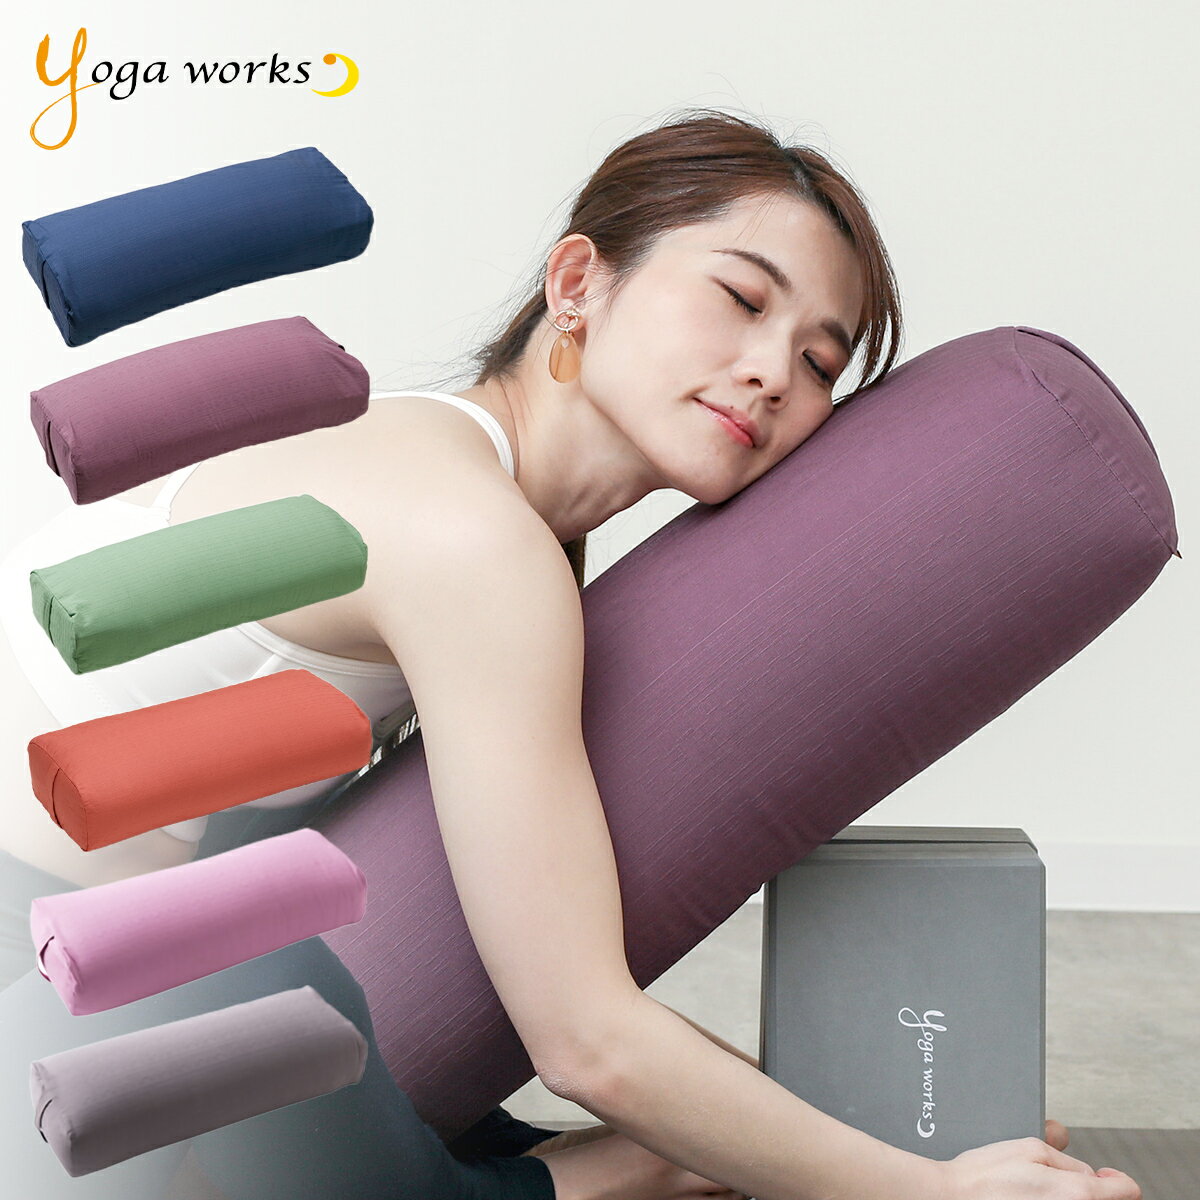 ヨガワークス ボルスター ヨガグッズ リストラティブ プロップス サポート 補助具 枕 国産 日本製 yogaworks 送料無料 